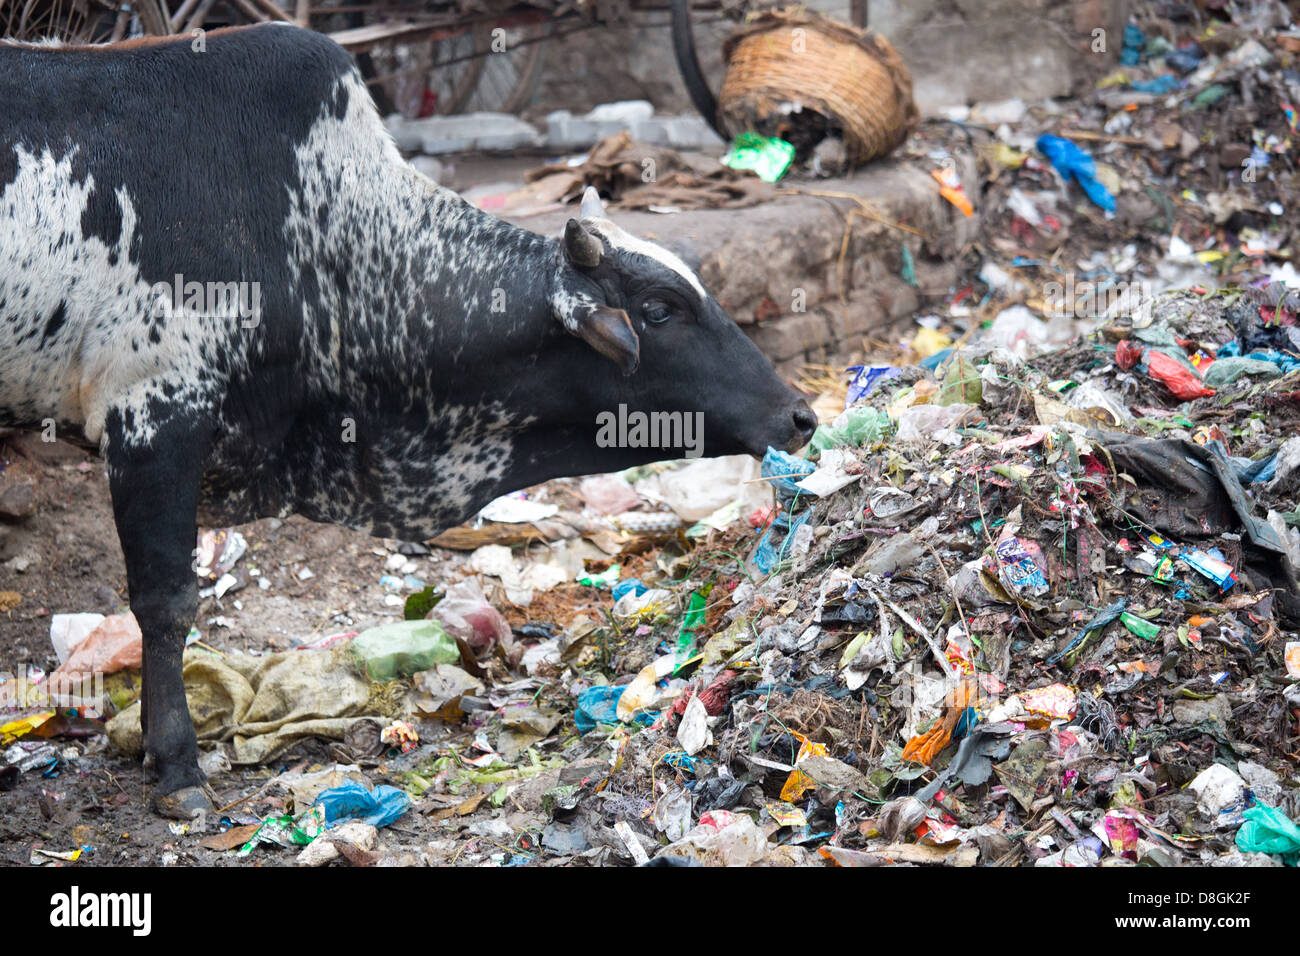 Les déchets de l'alimentation des vaches à Varanasi, Inde Banque D'Images